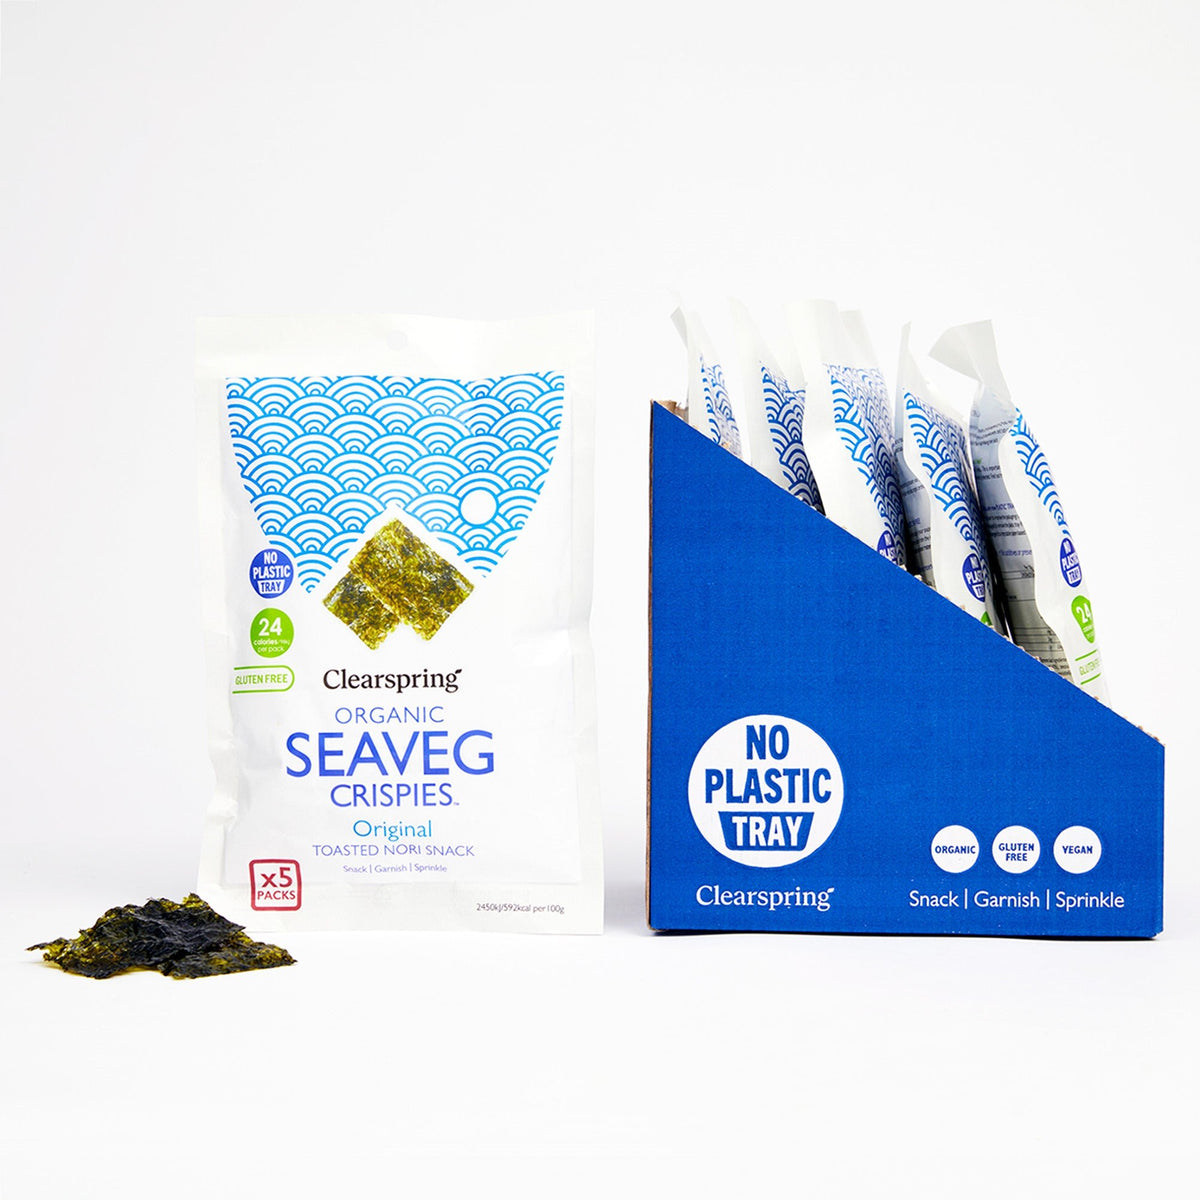 Clearspring Organic Seaveg Crispies Multipack - Original (Crispy Seaweed Thins)